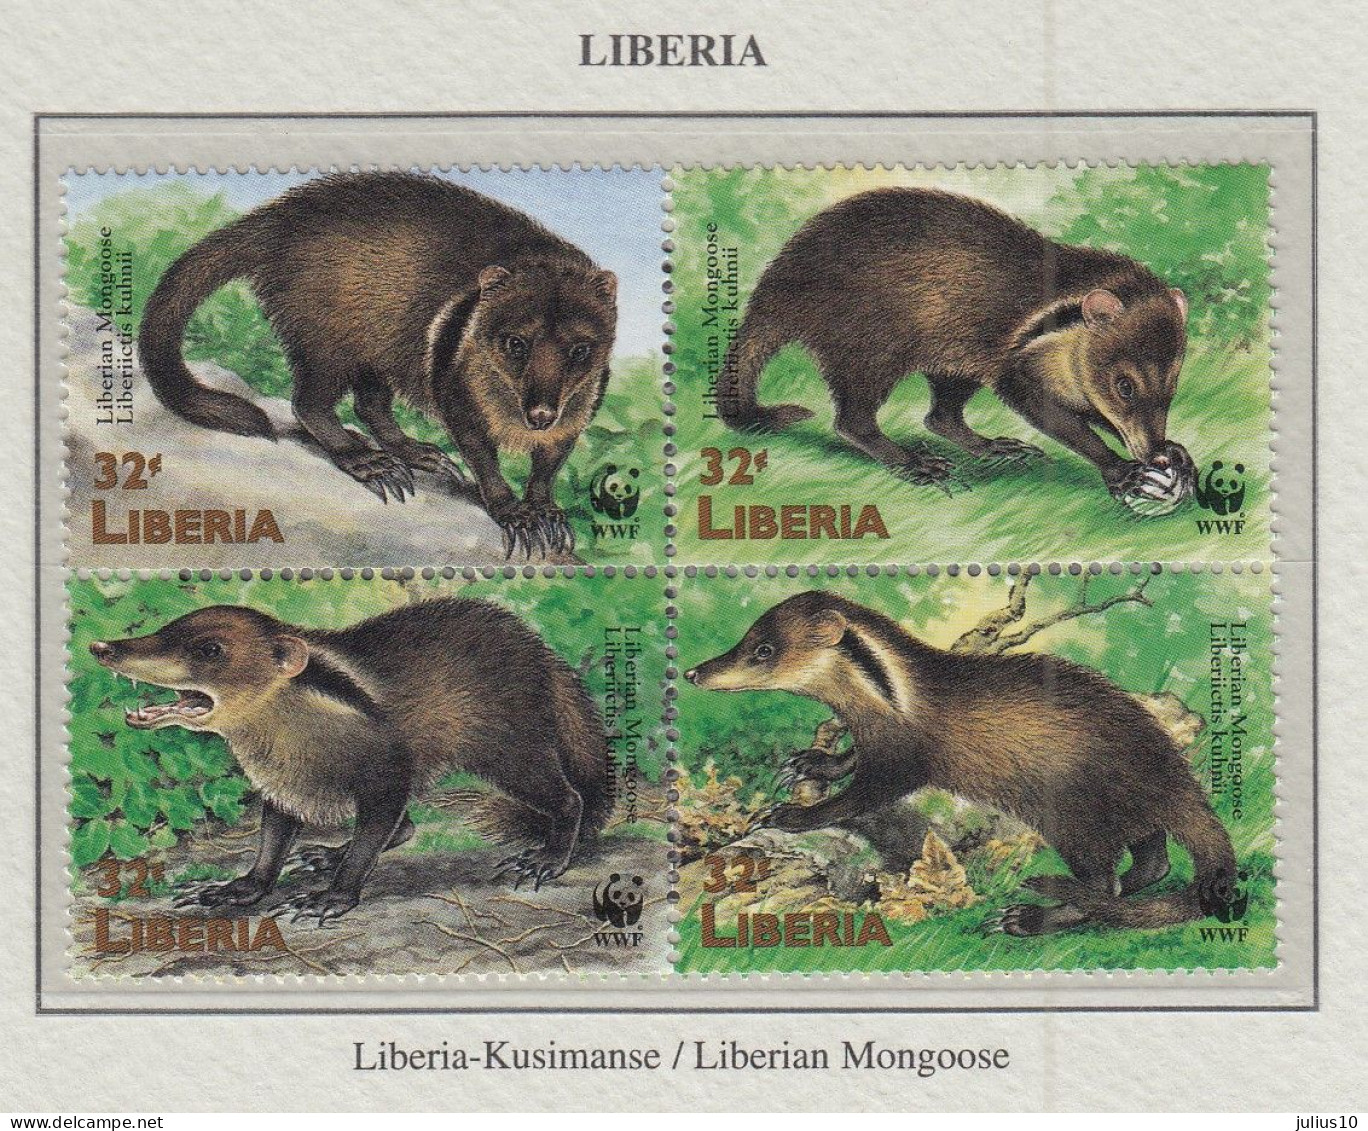 LIBERIA 1998 WWF Animals Manguste Mi 2040-2043 MNH Fauna 595 - Ongebruikt